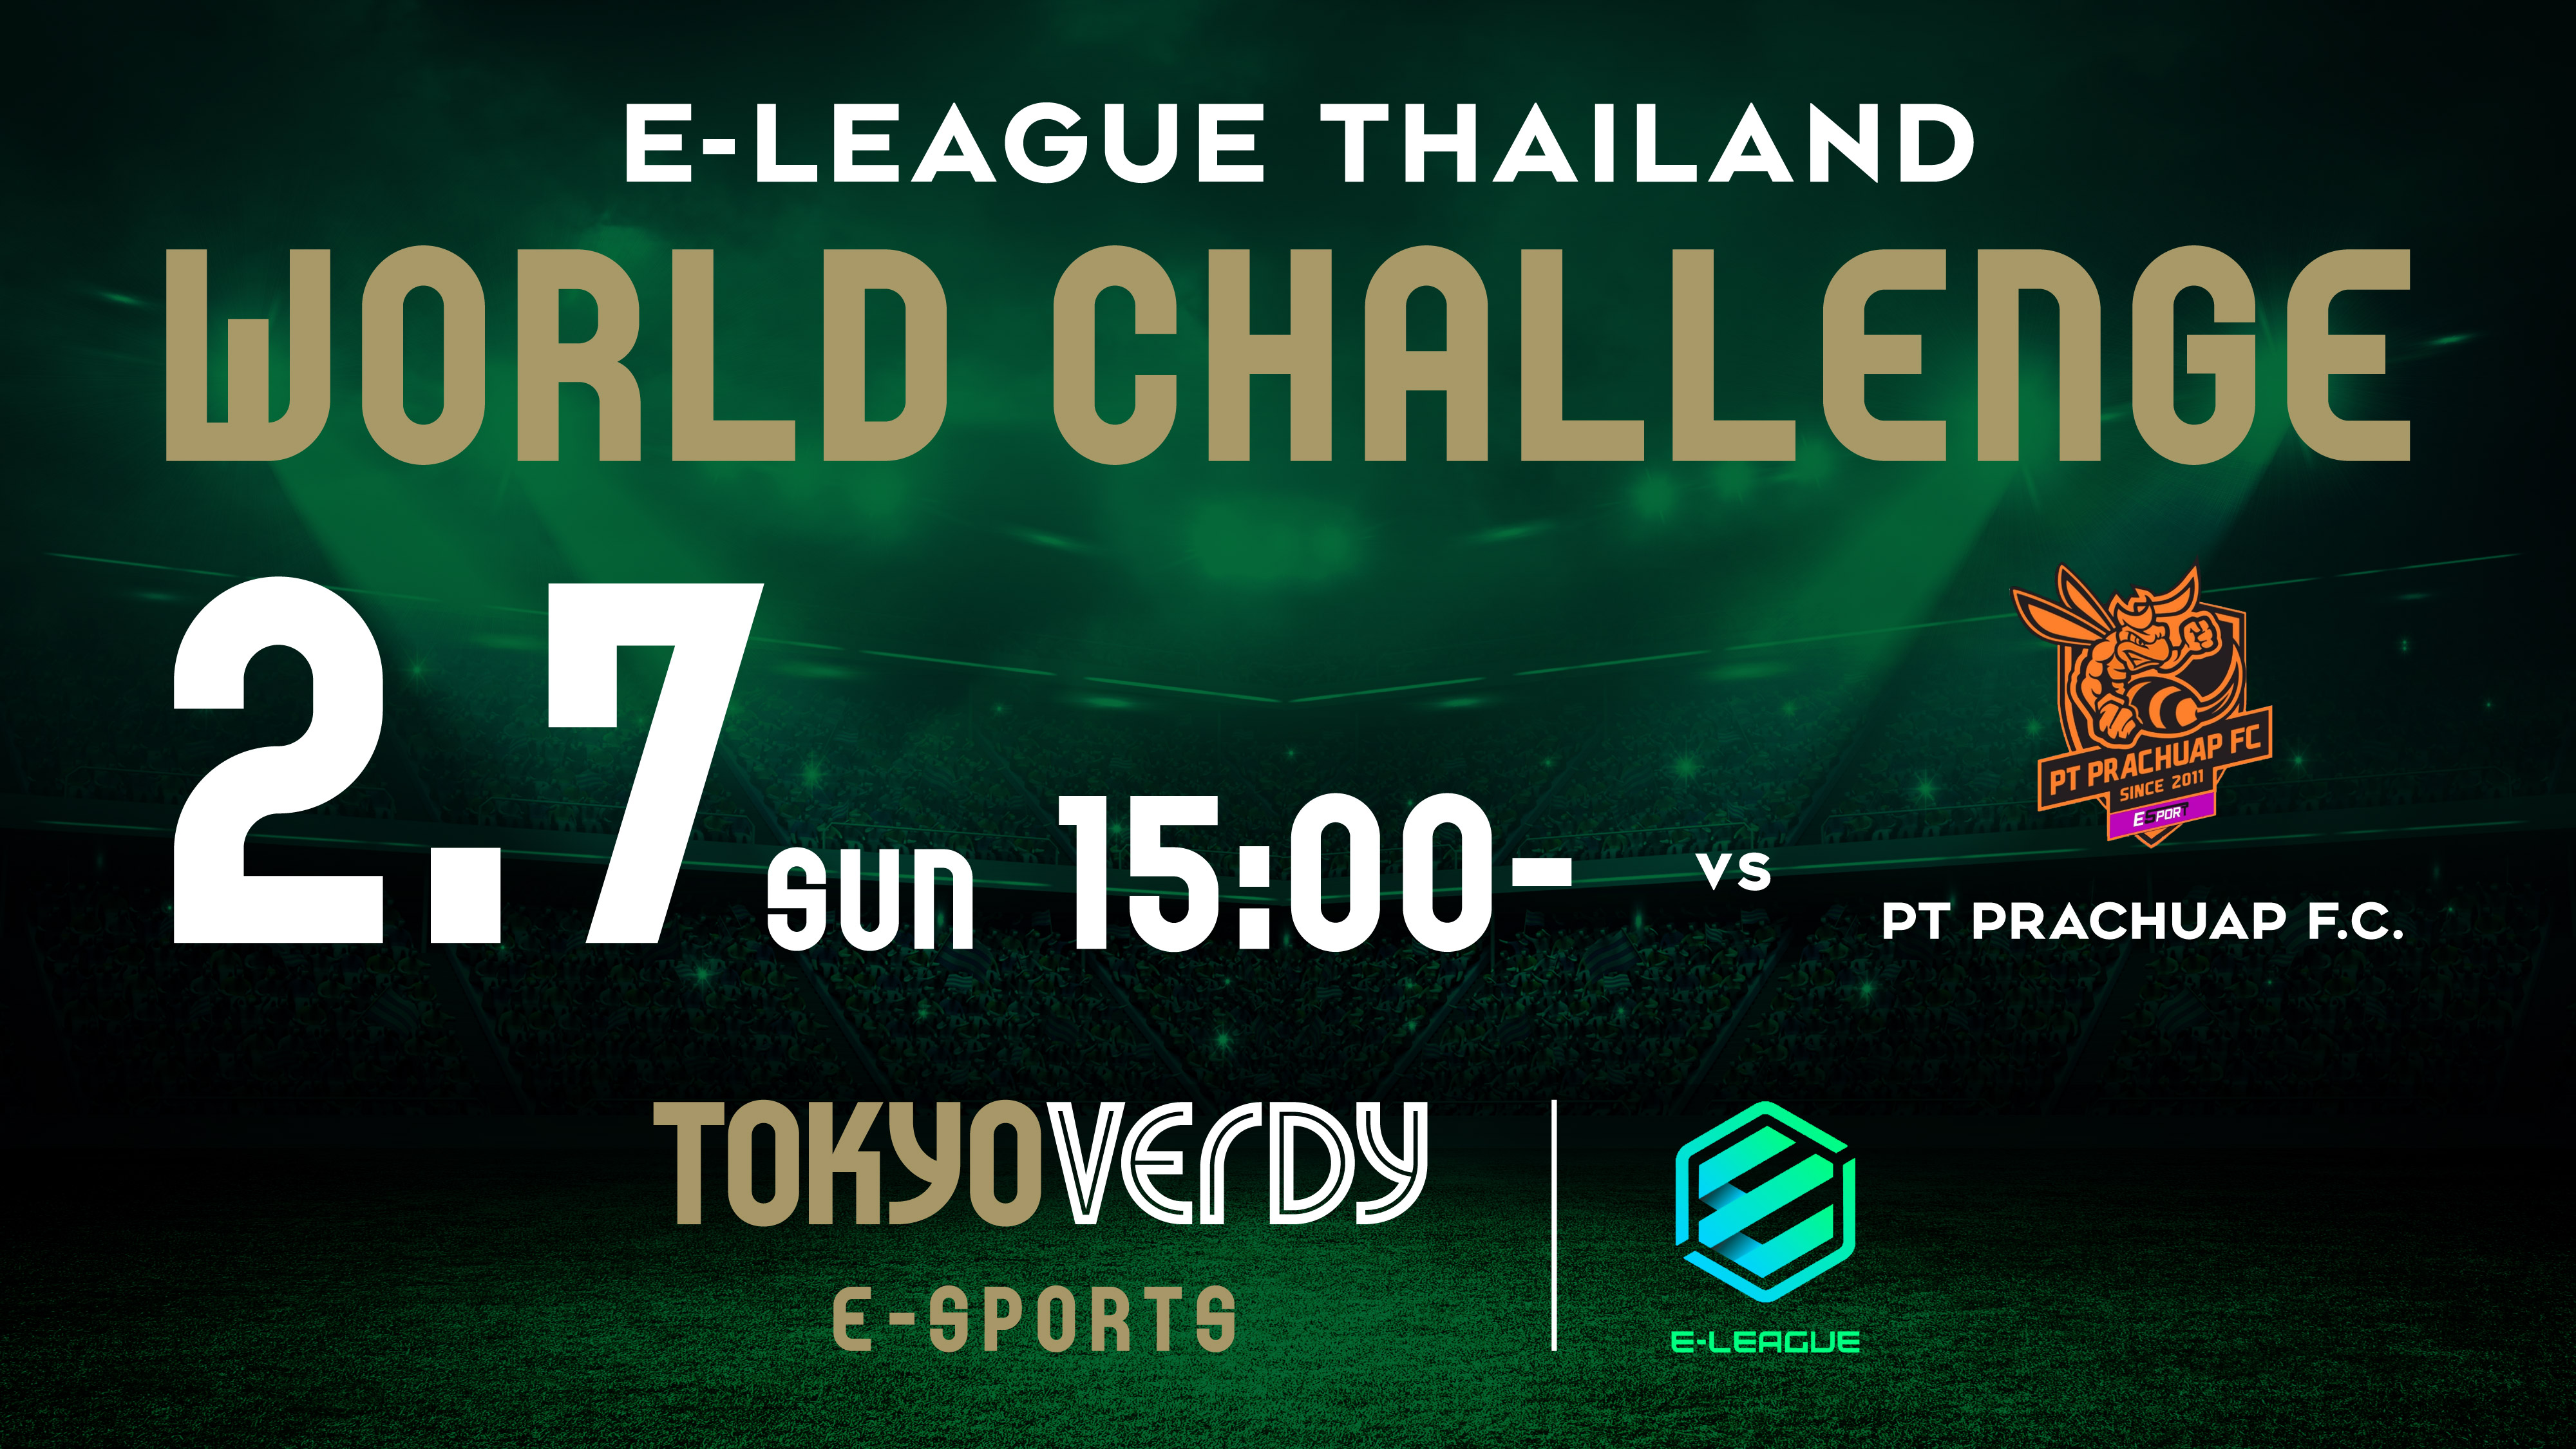 アジア各国の代表チームで構成される E League 21 開幕のお知らせ 東京ヴェルディeスポーツのプレスリリース